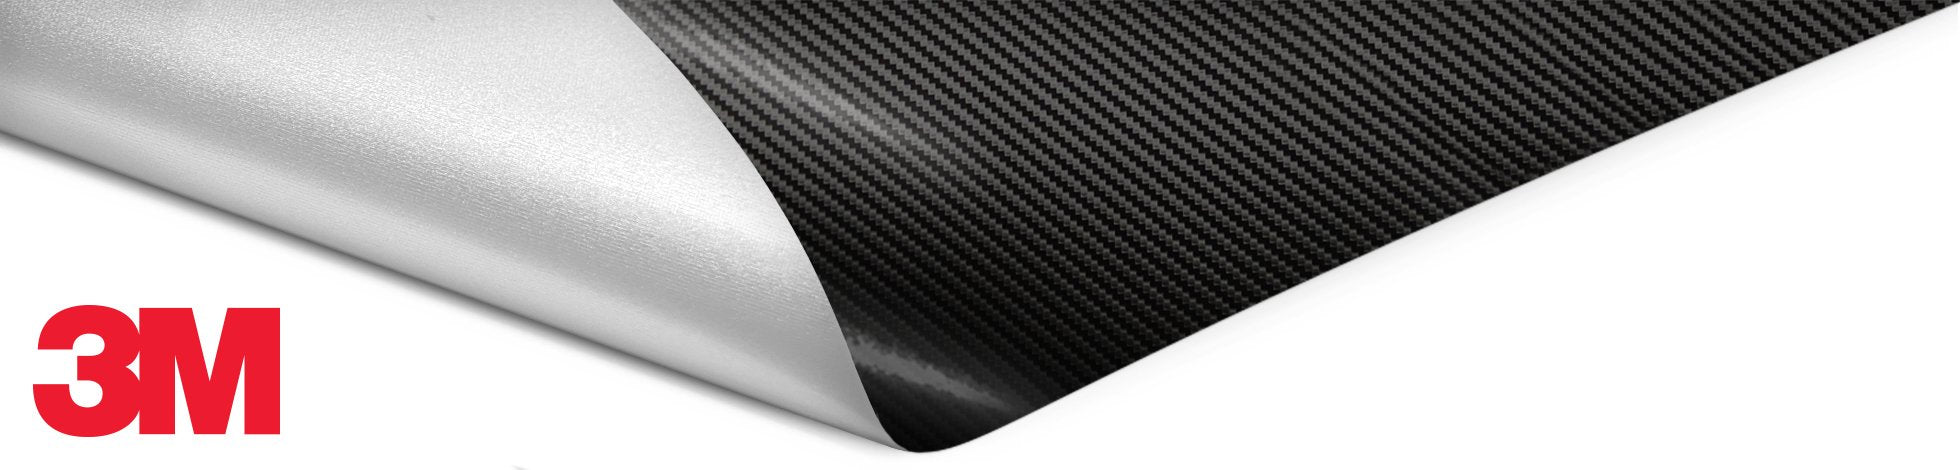 3m carbon fiber wrap